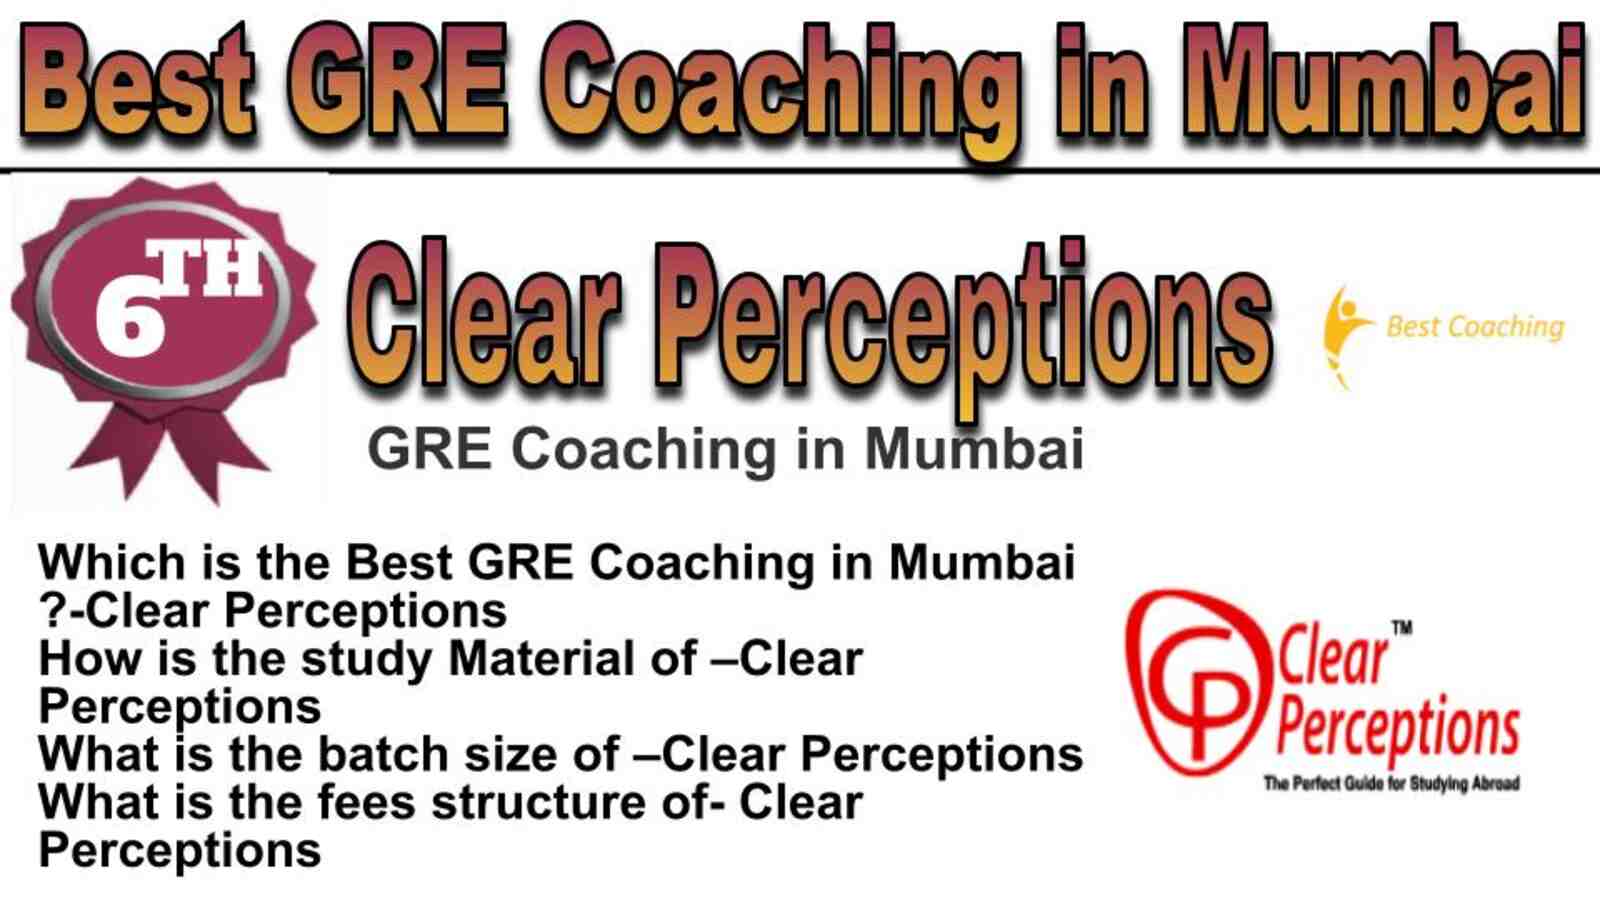 Rank 6 best GRE coaching in Mumbai